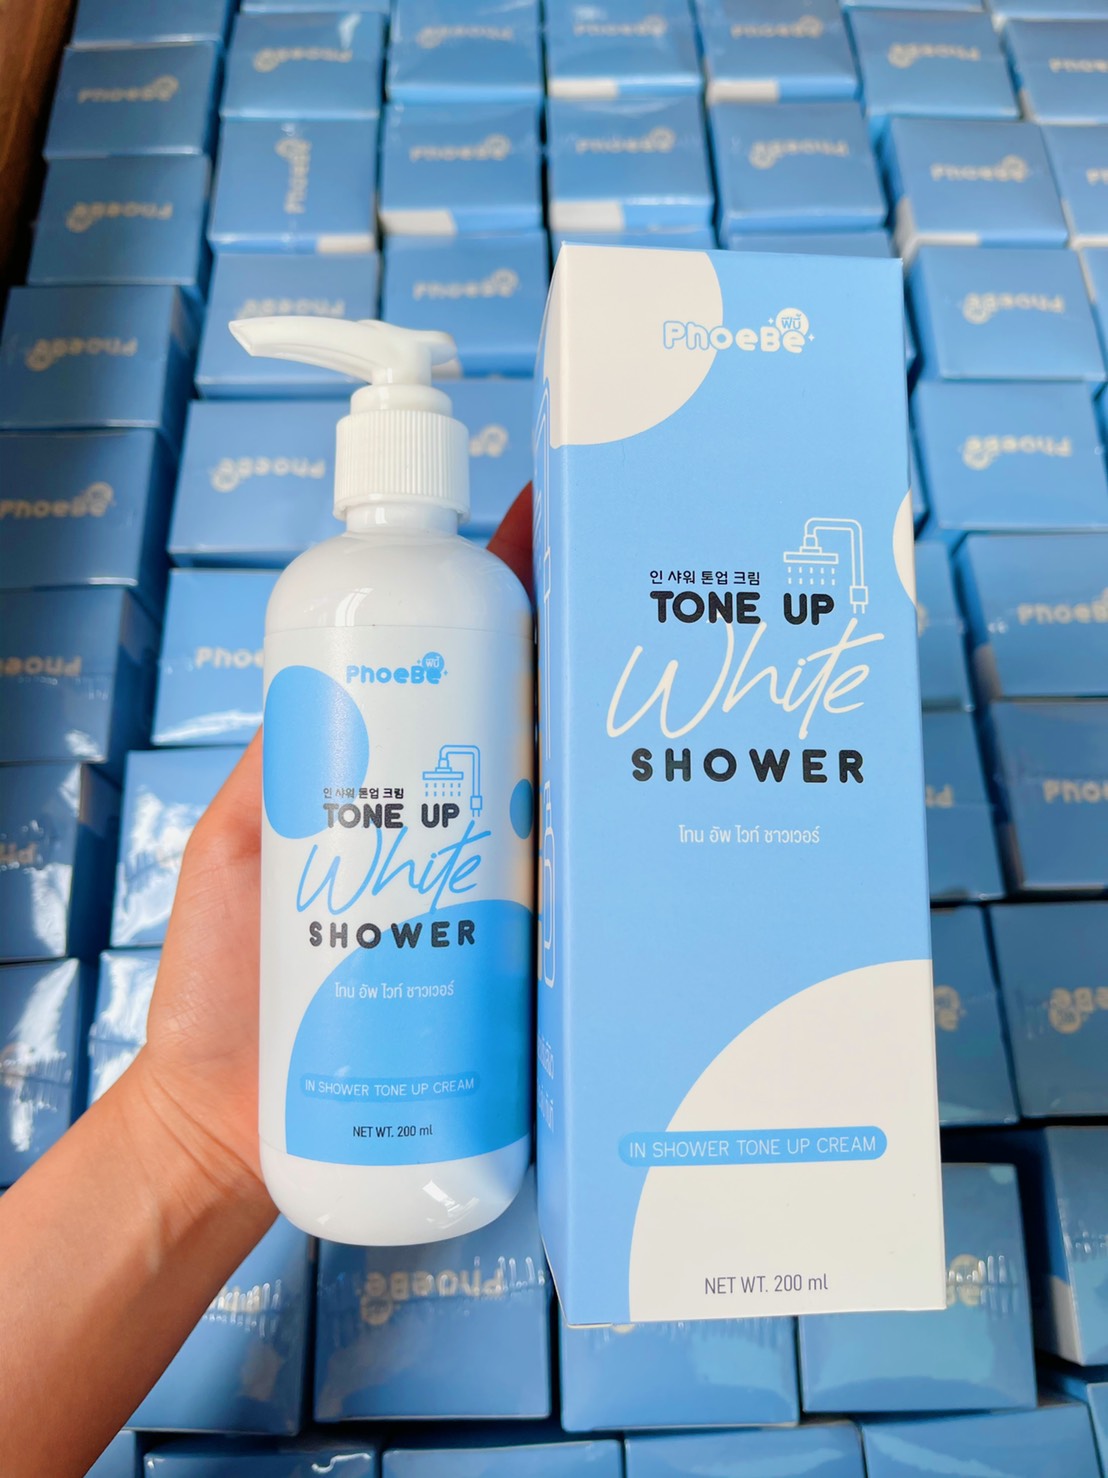 ครีมอาบน้ำ ฟีบี้ โทน อัพ ไวท์ ชาวเวอร์ PhoeBe Tone Up White Shower ช่วยให้ผิวขาวใส ชุ่มชื่น ขนาด 200 ml. พร้อมส่ง